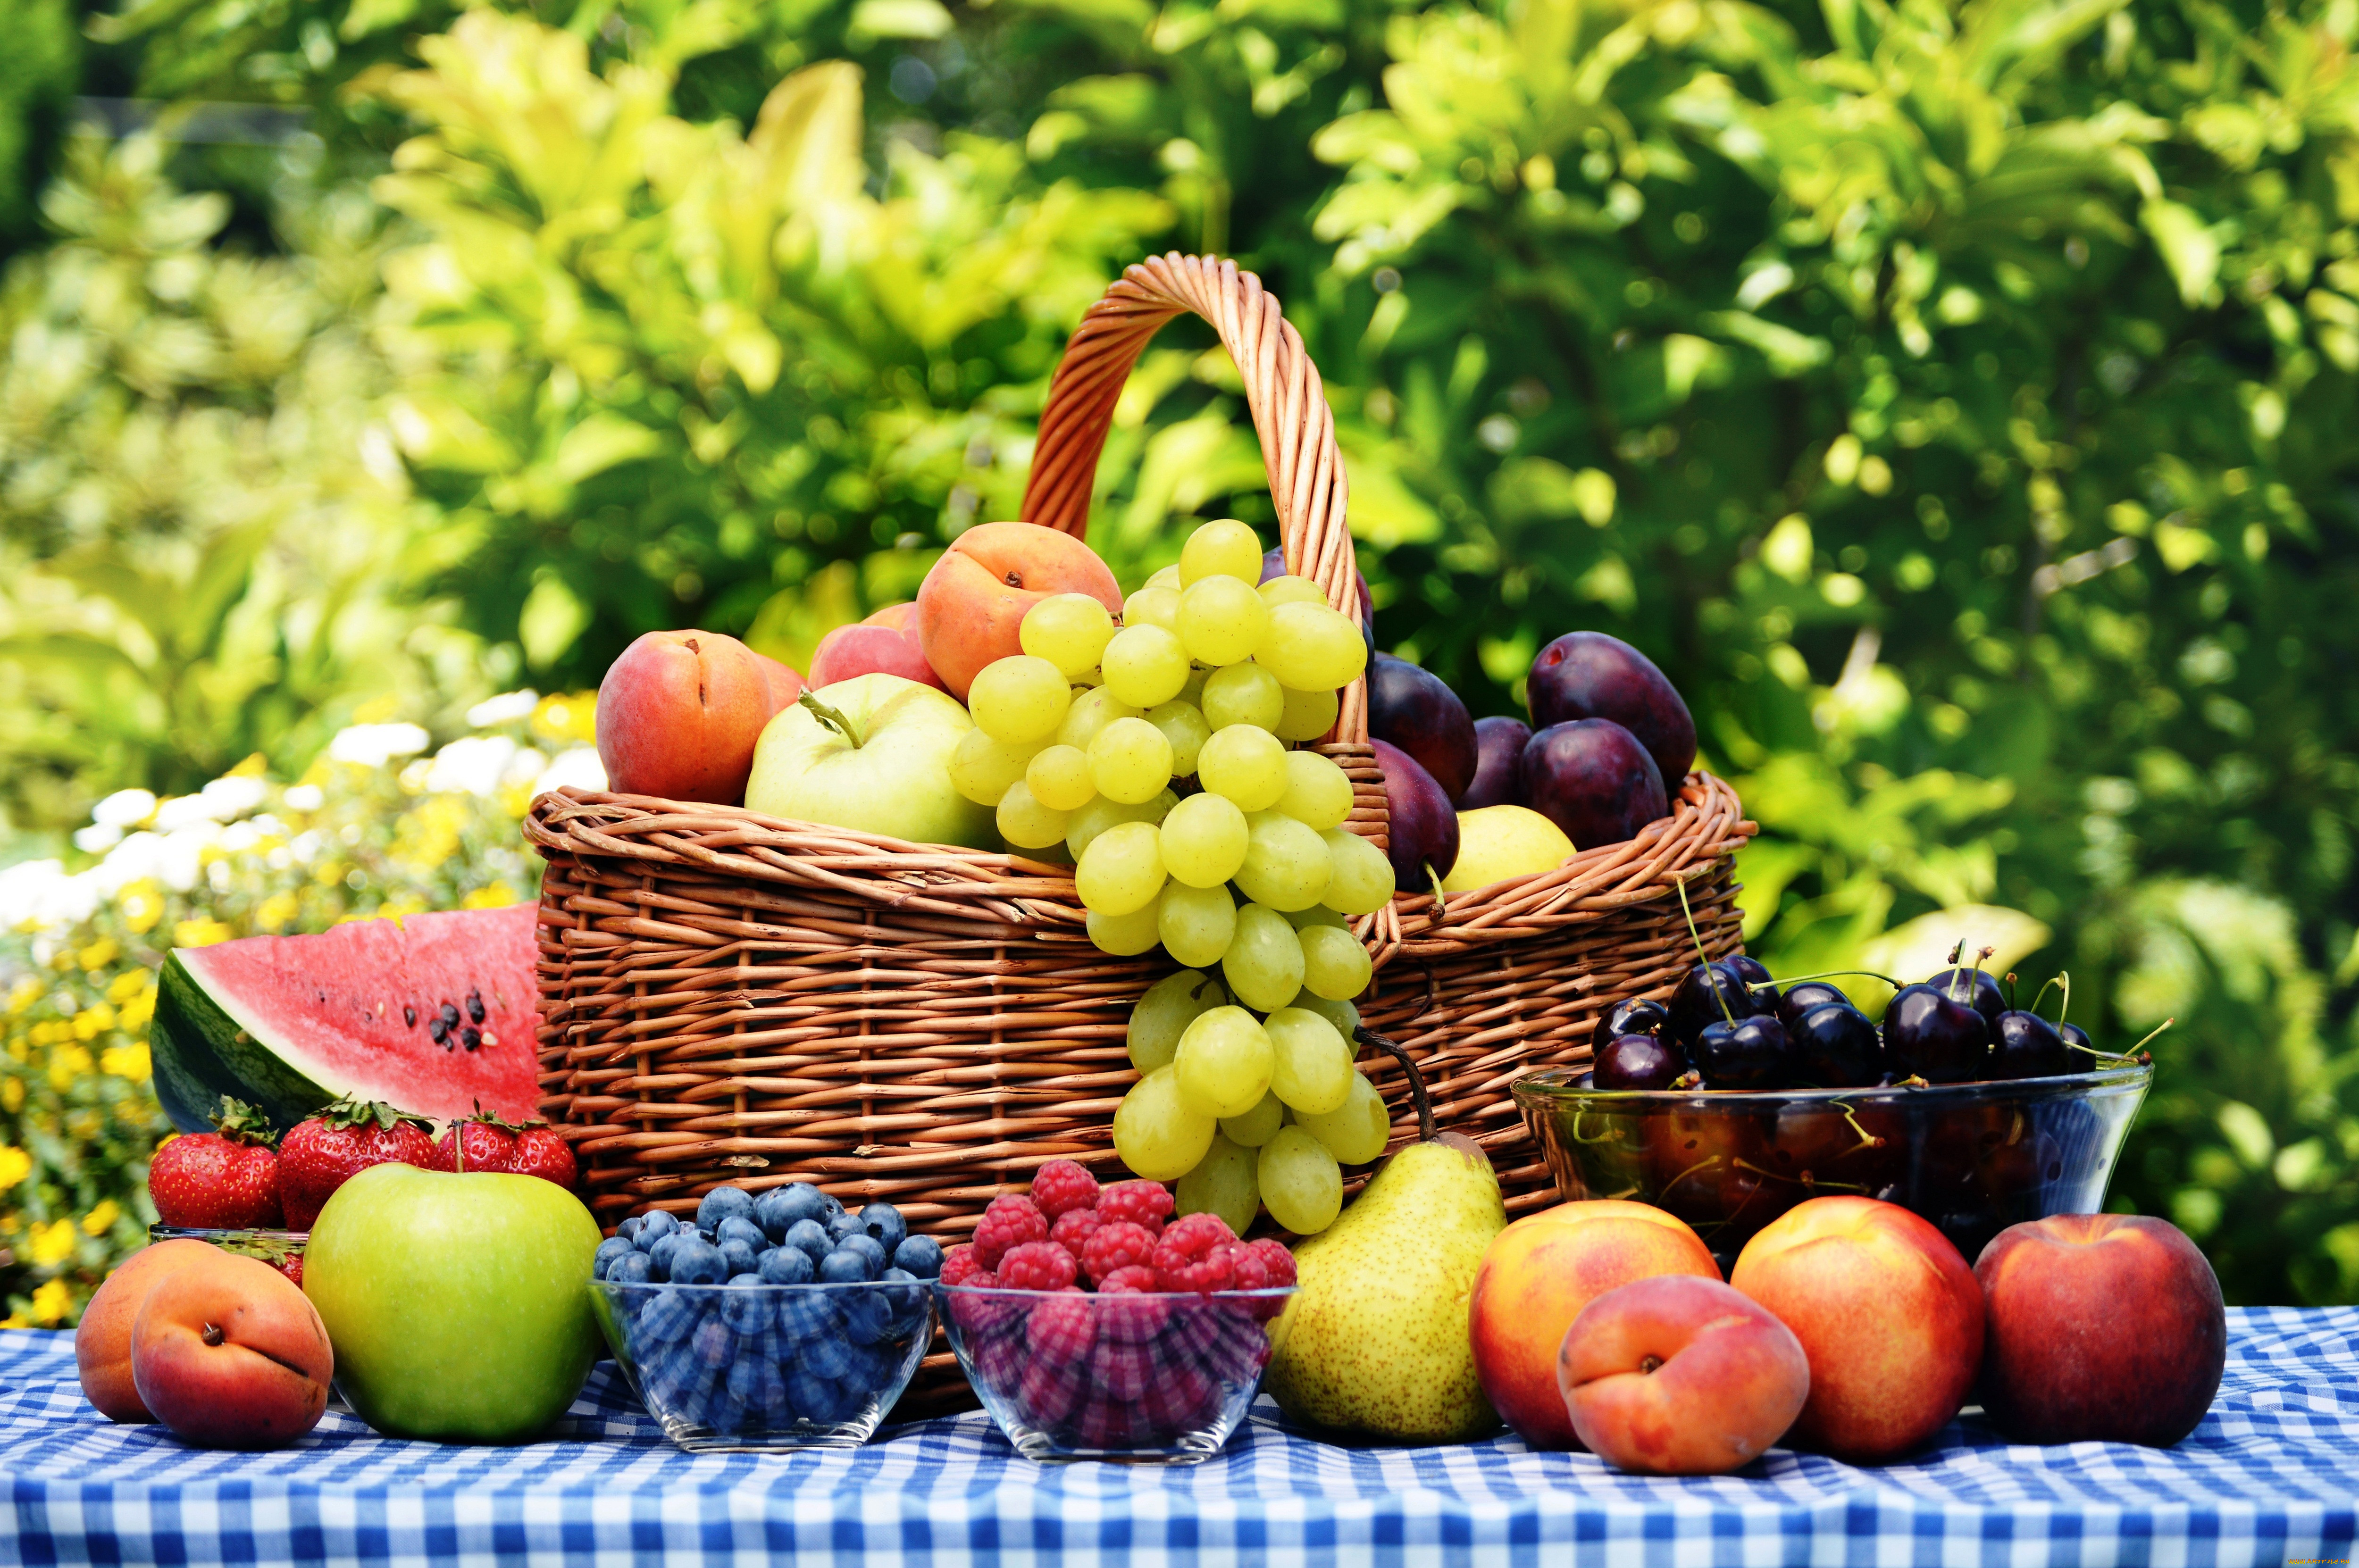 Фруктовые поля the hunt. Фрукты и ягоды. Летние фрукты и ягоды. Лето фрукты ягоды. Фрукты на столе.